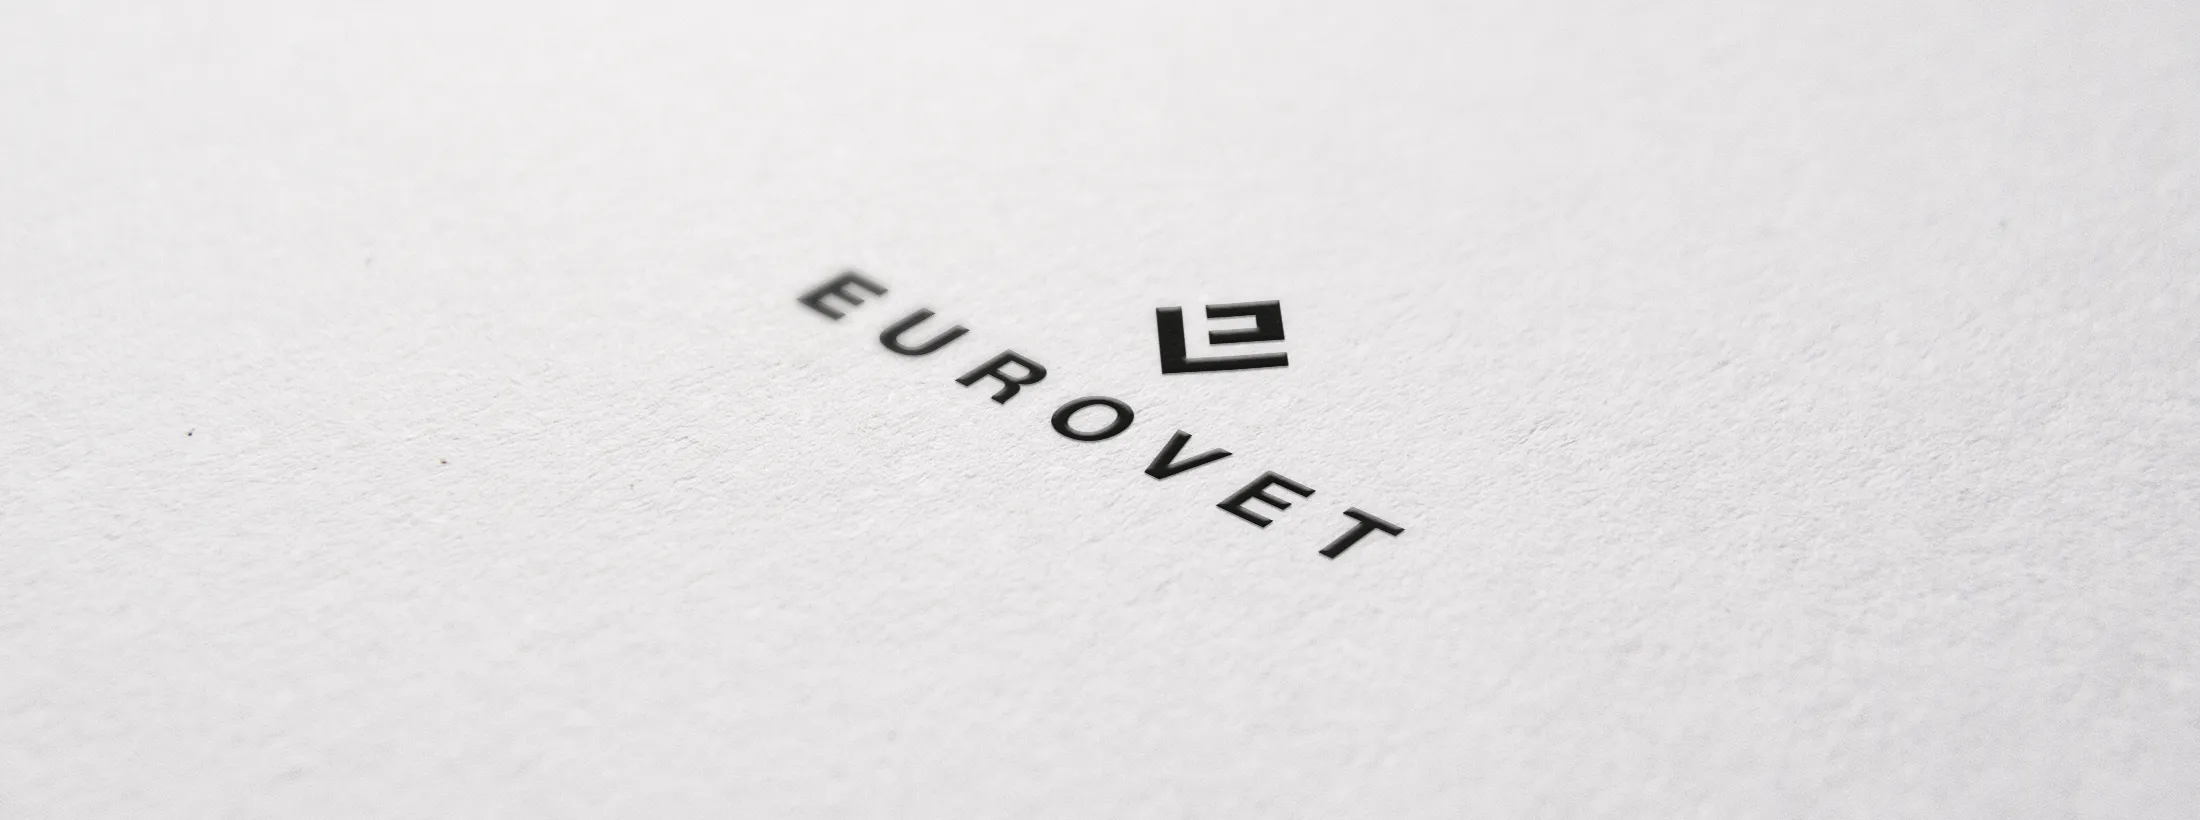 logo eurovet branding phone identite visuelle osb communication